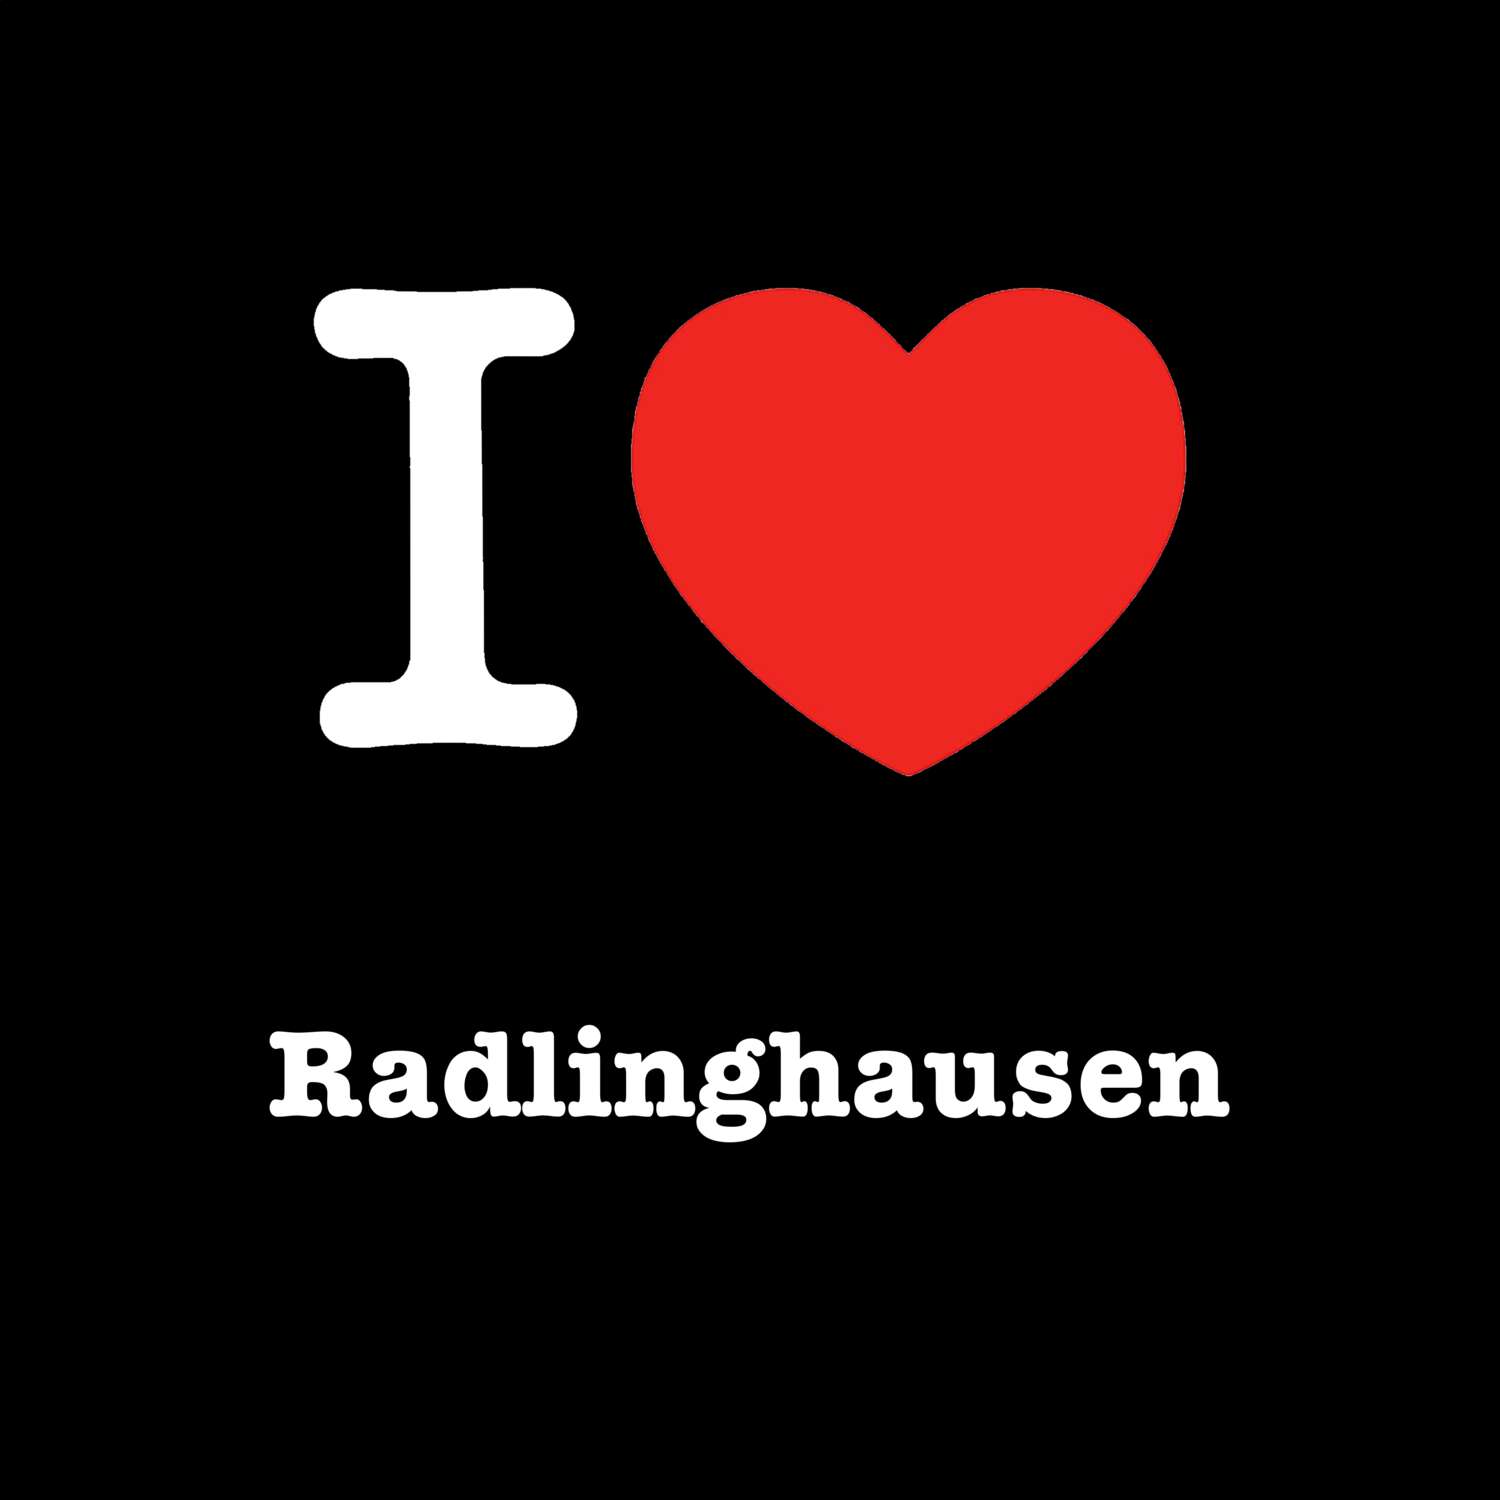 Radlinghausen T-Shirt »I love«